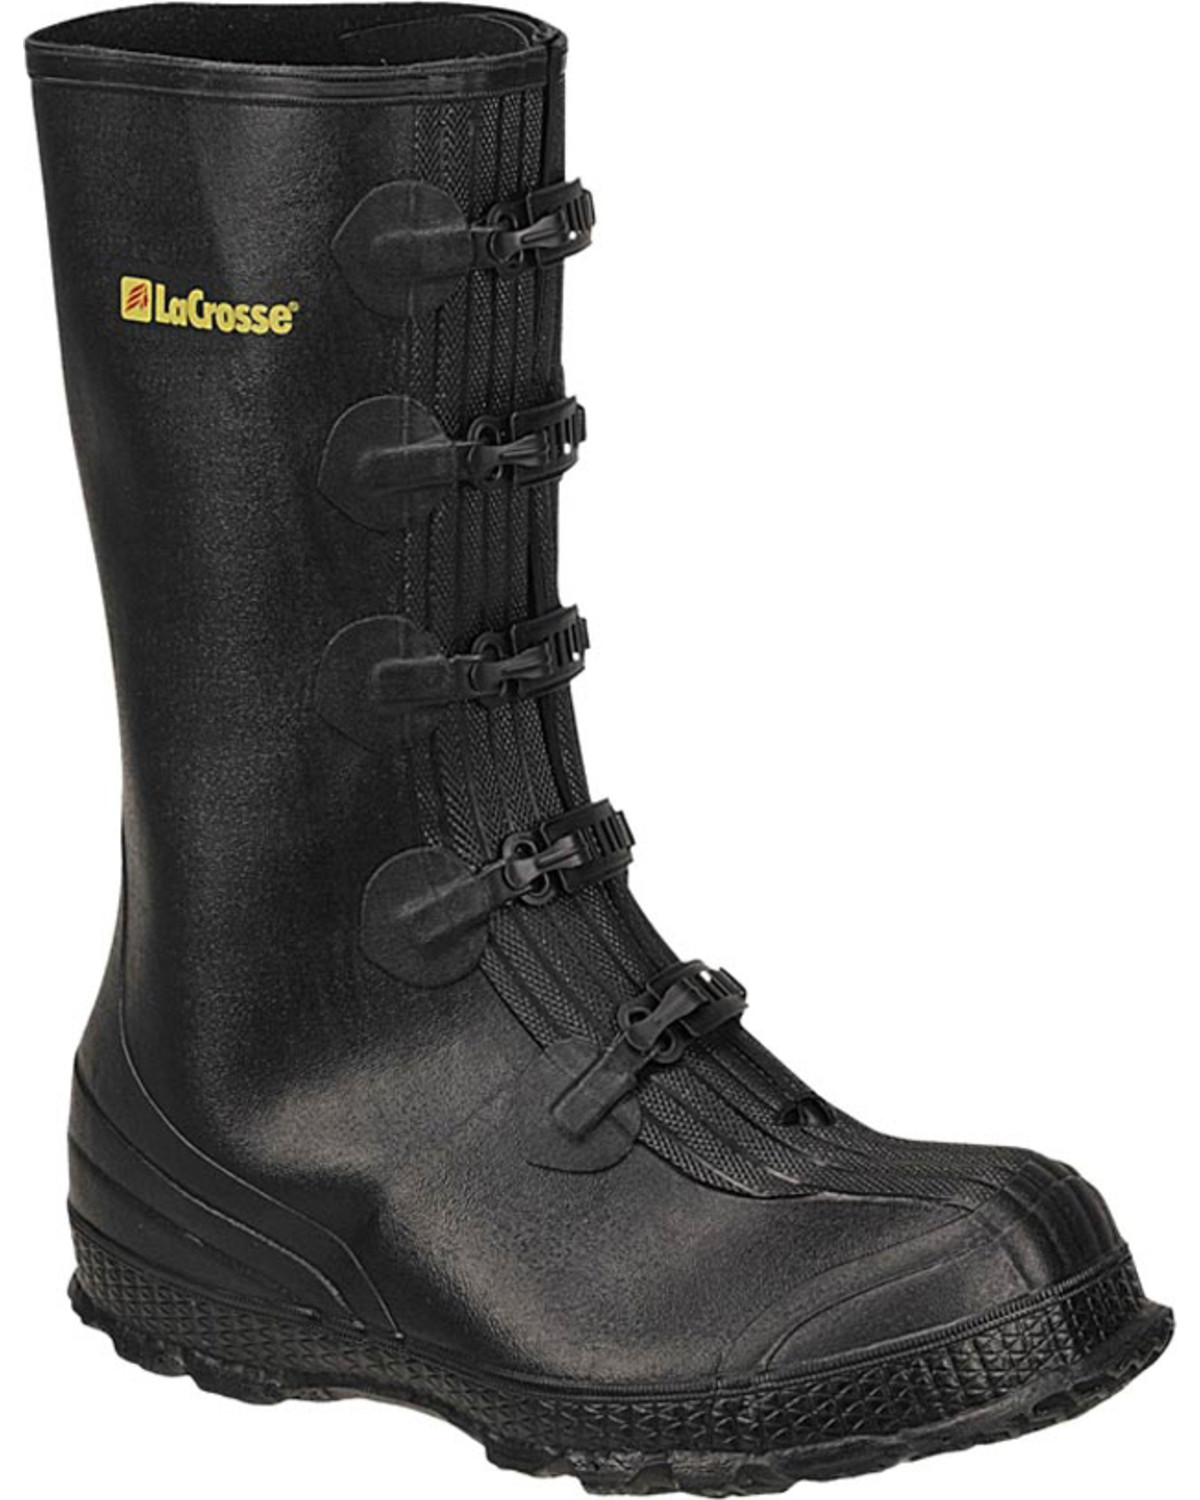 overshoe rain boots